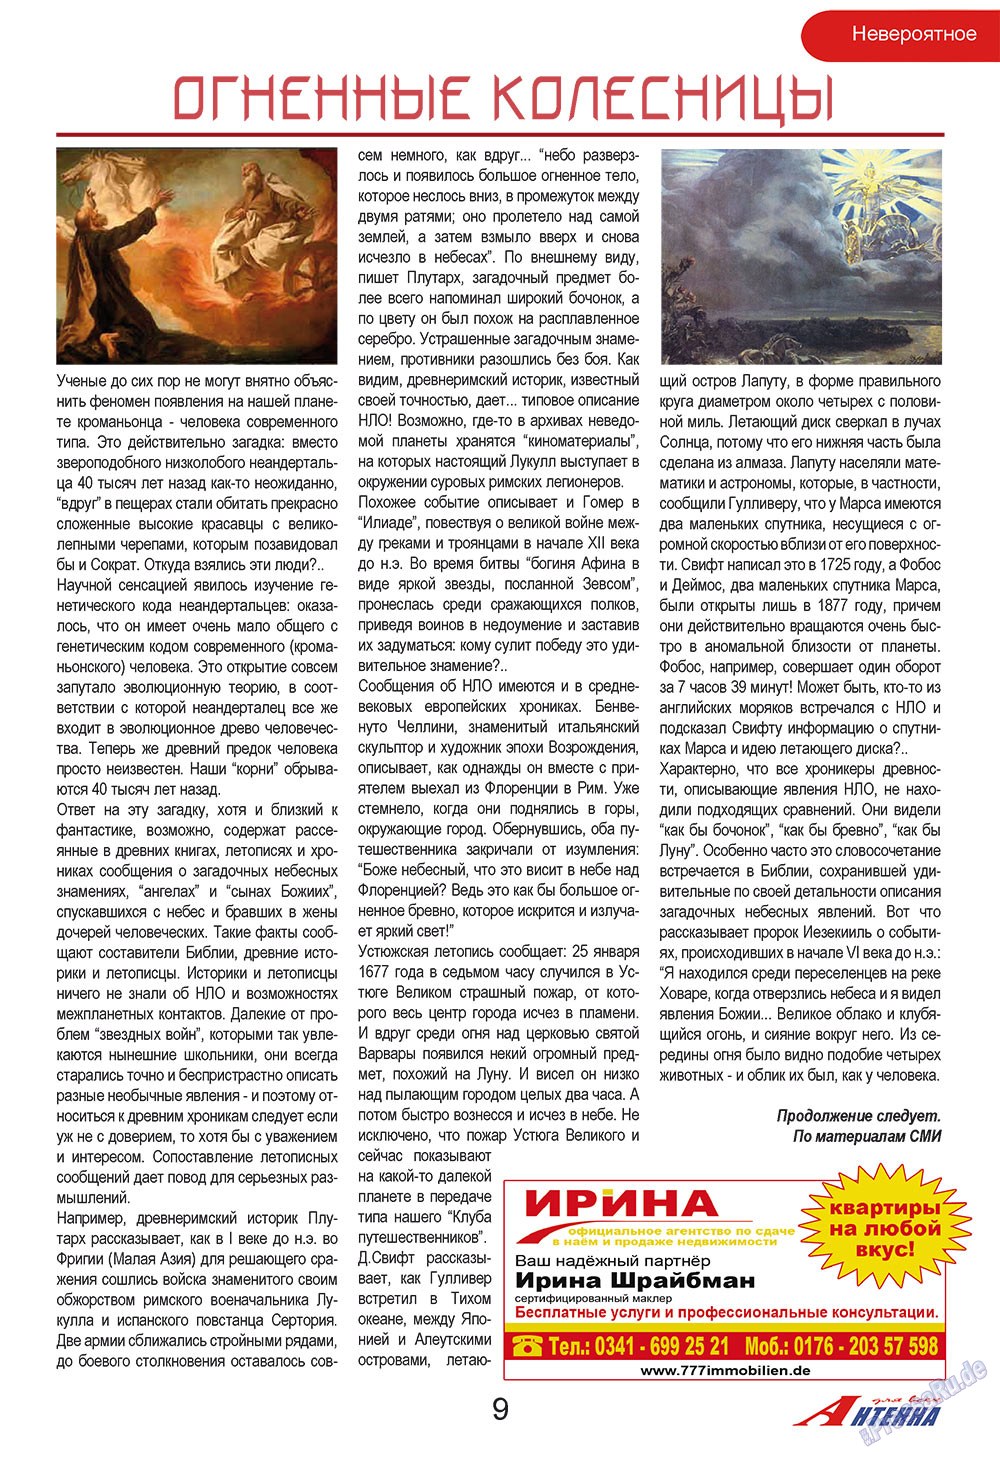 Антенна, журнал. 2009 №2 стр.9